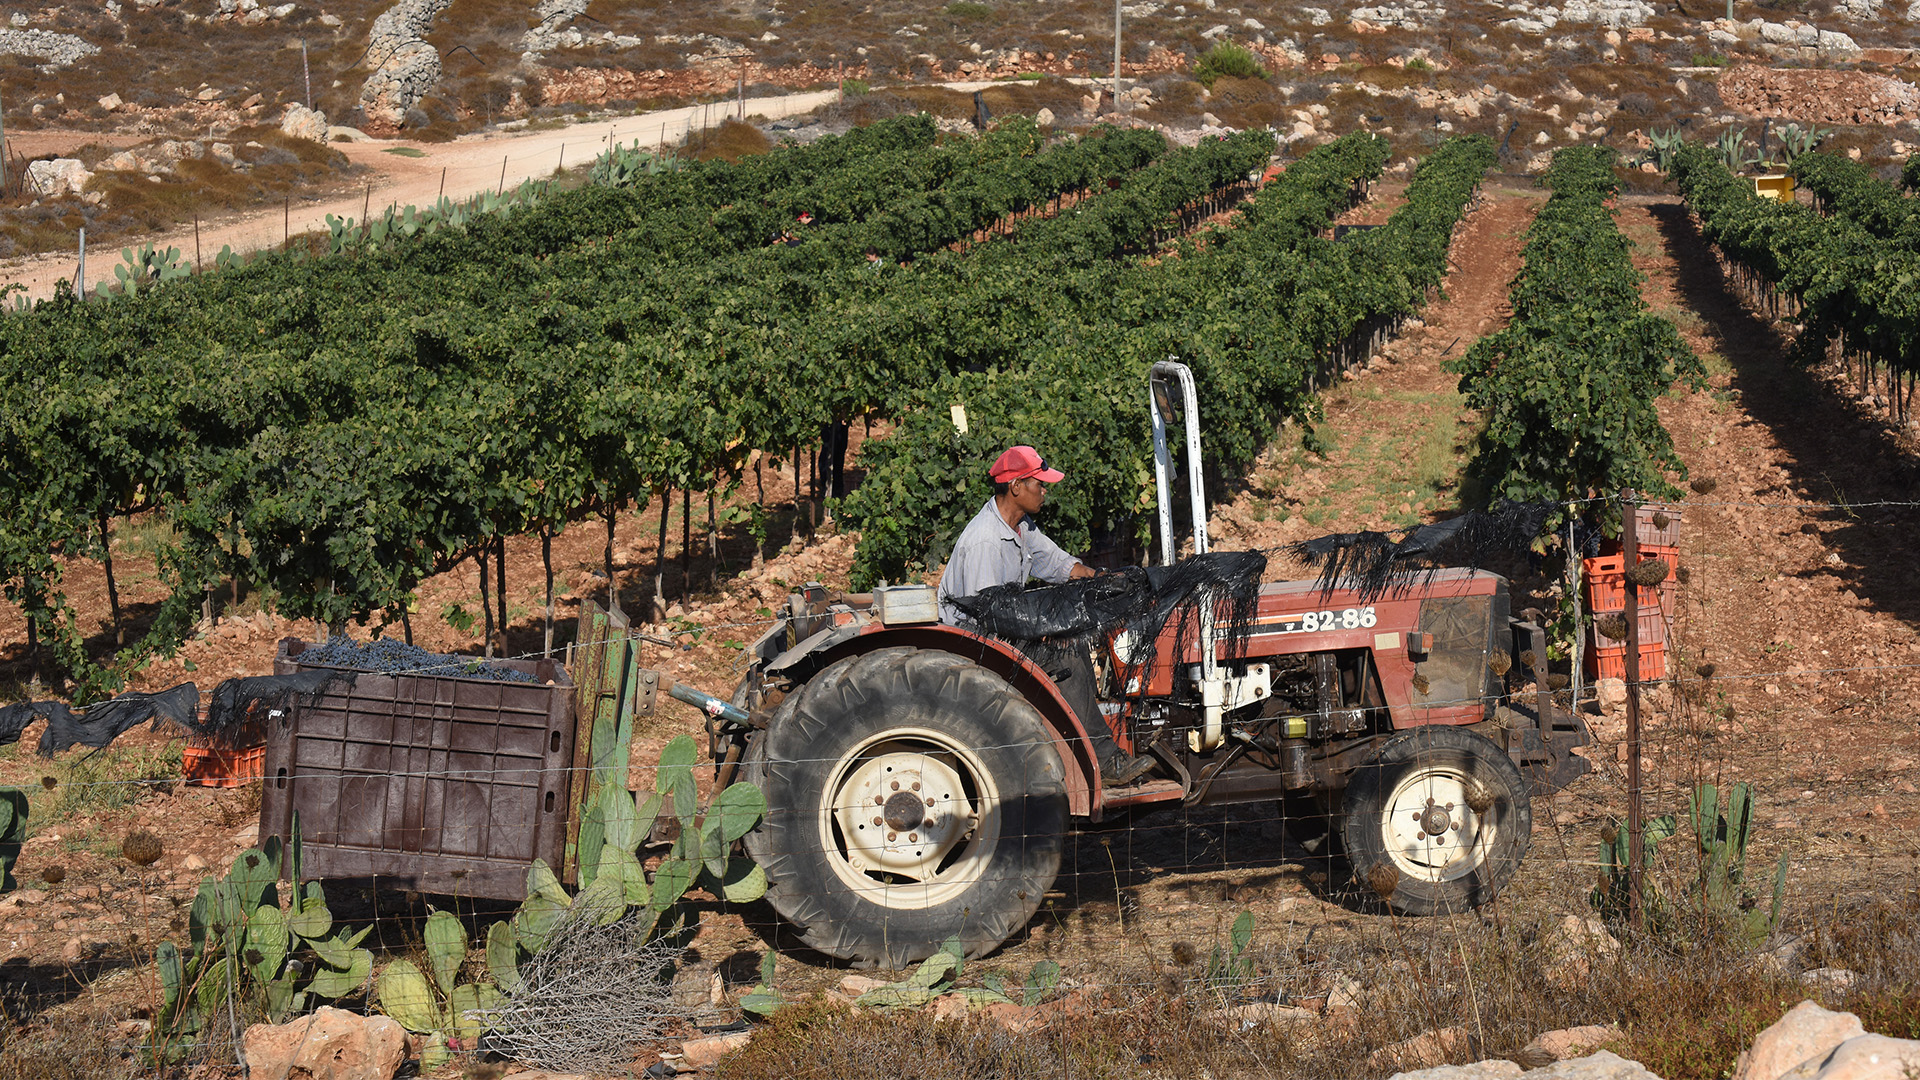 Ein ausländischer Arbeiter zieht einen Container mit Trauben in einem Weinanbaugebiet in Ofra, Westjordanland | picture alliance / newscom